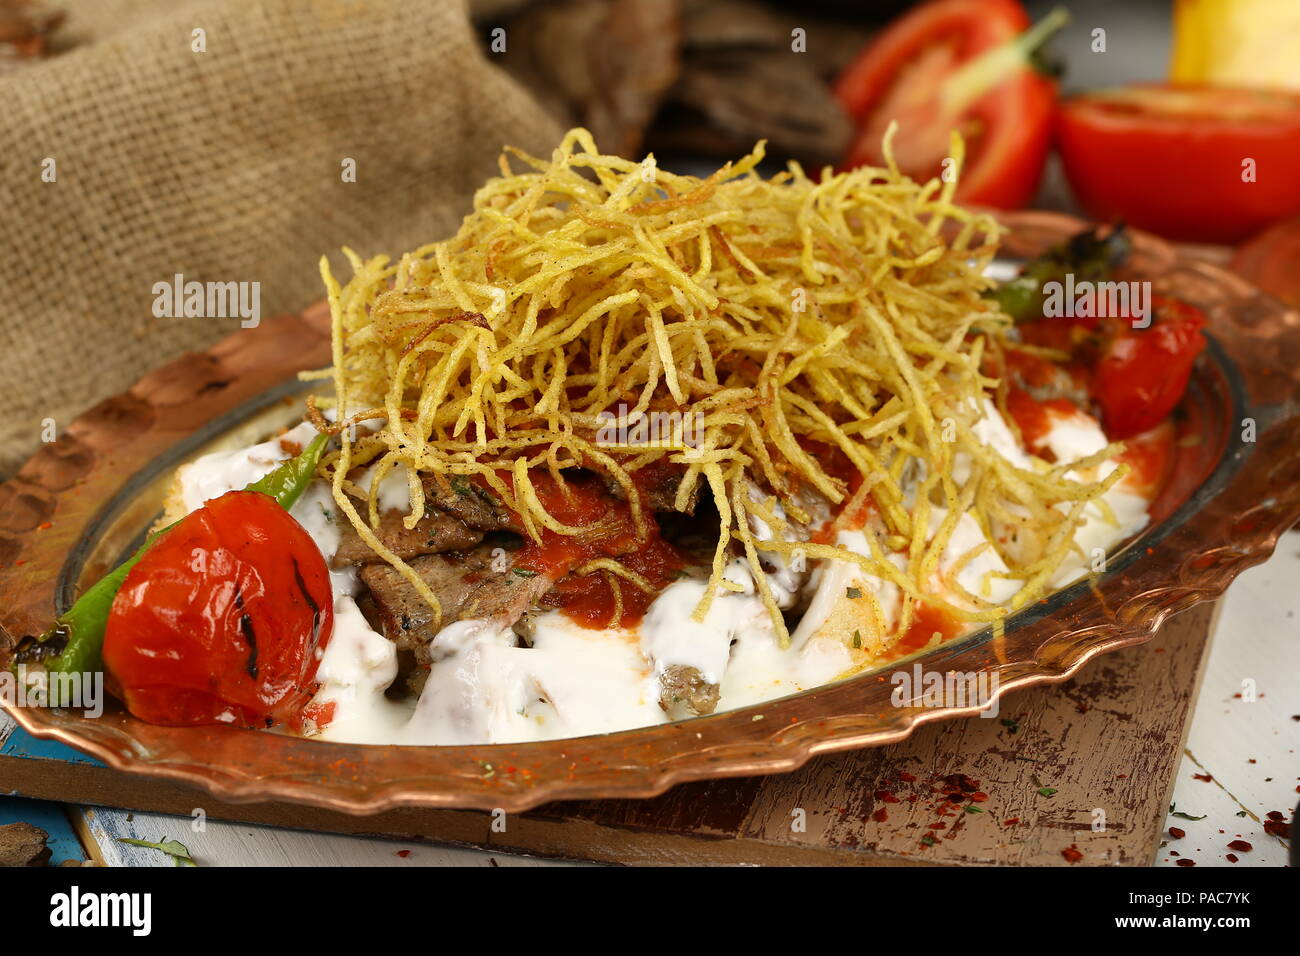 Türkische Fleisch Kebab mit Joghurt und Pommes Frites - cokertme Kebabi ...